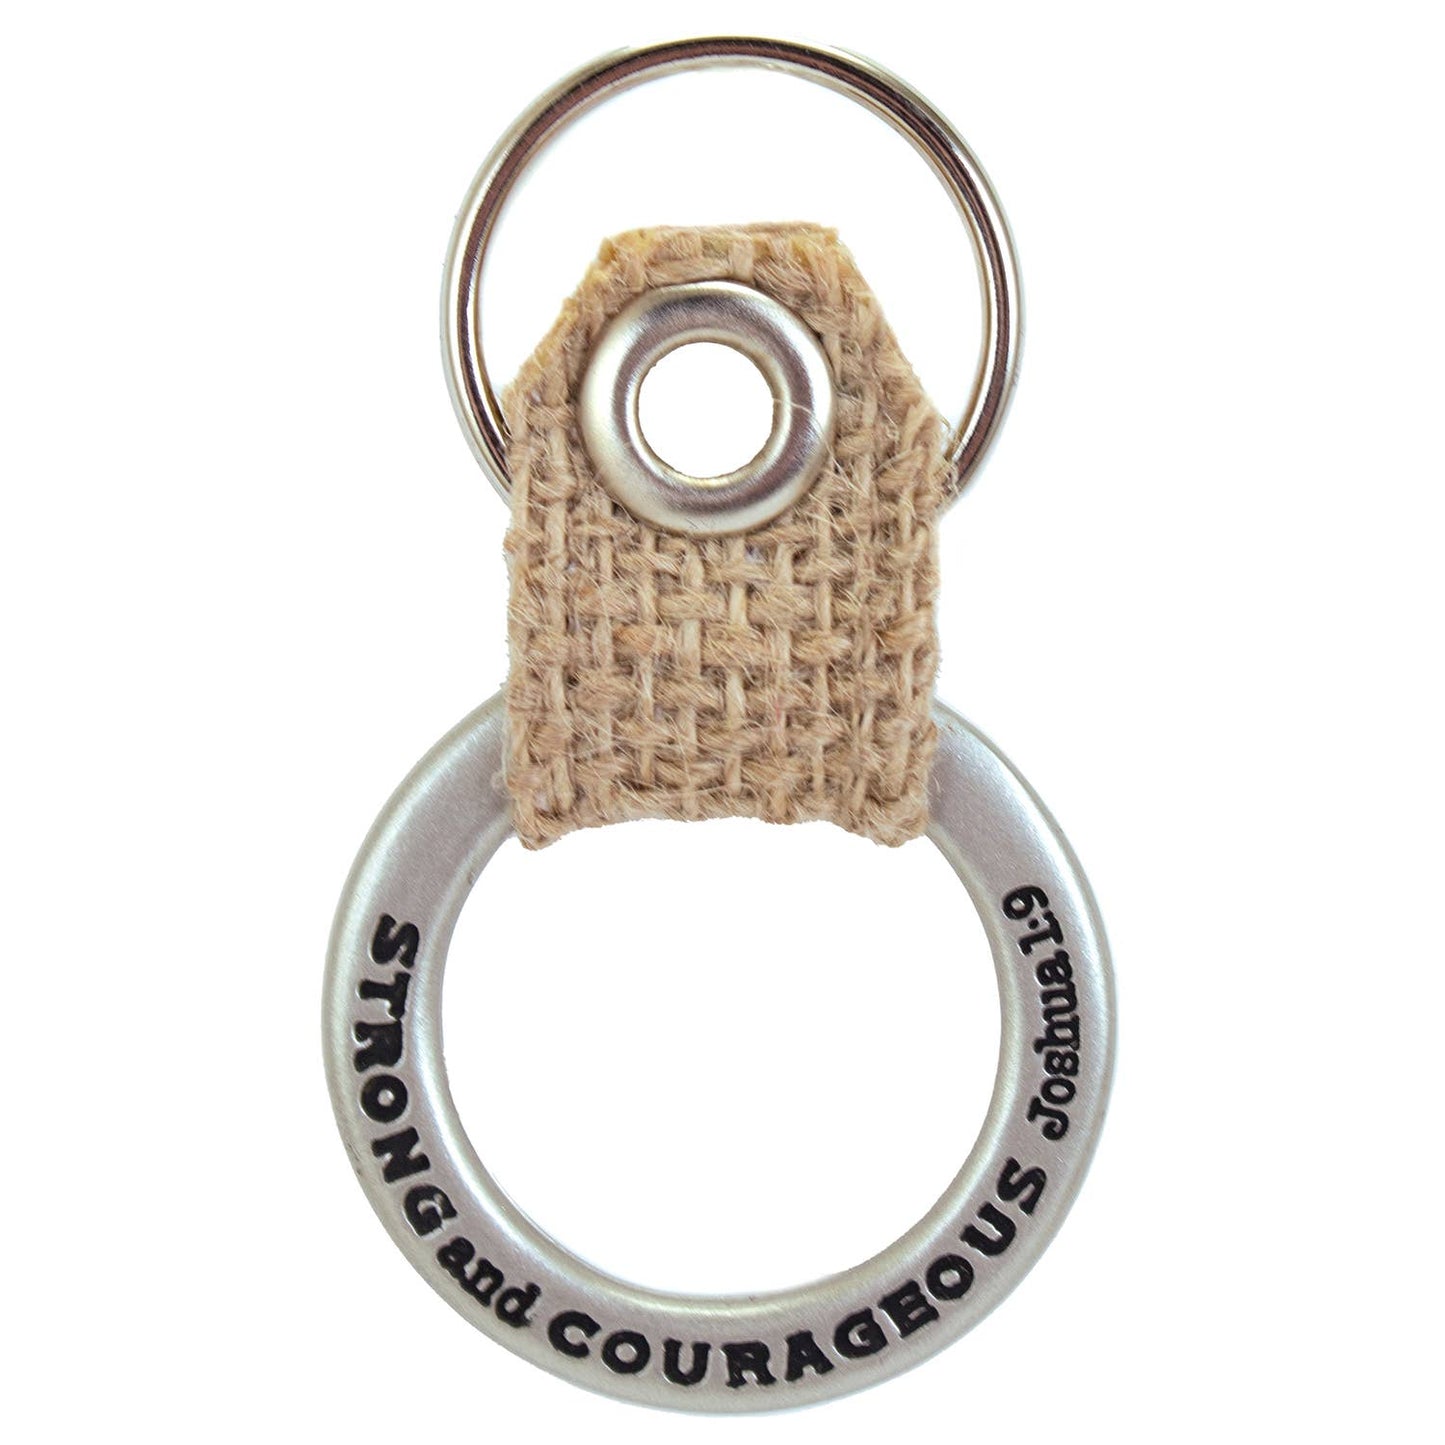 Man of Courage Key Ring